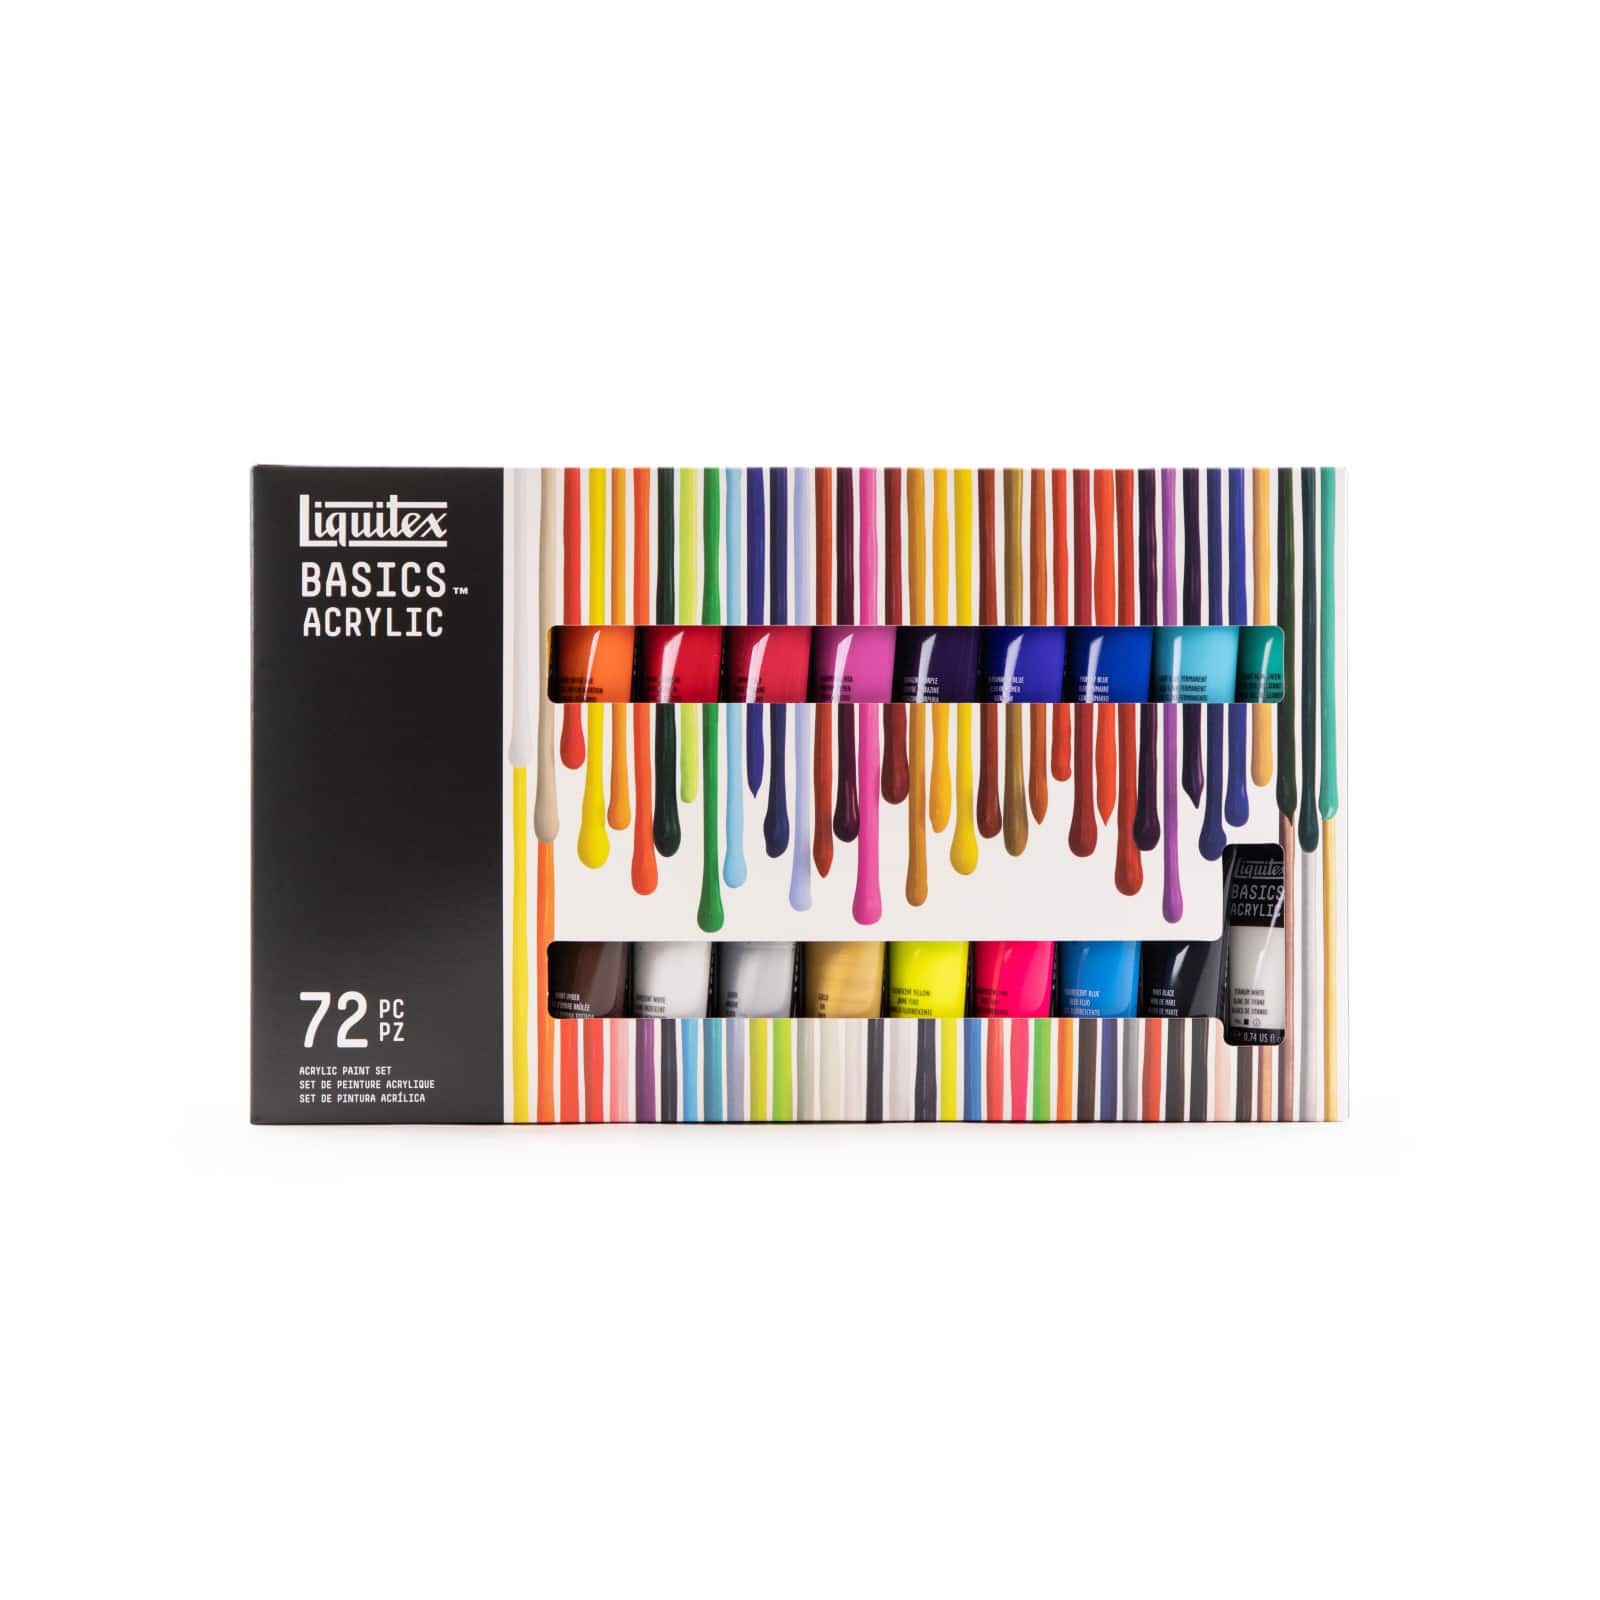 Liquitex Basics Acrylic Set - Set of 72, Assorted Colors, 0.74 oz, Tubes, BLICK Art Materials